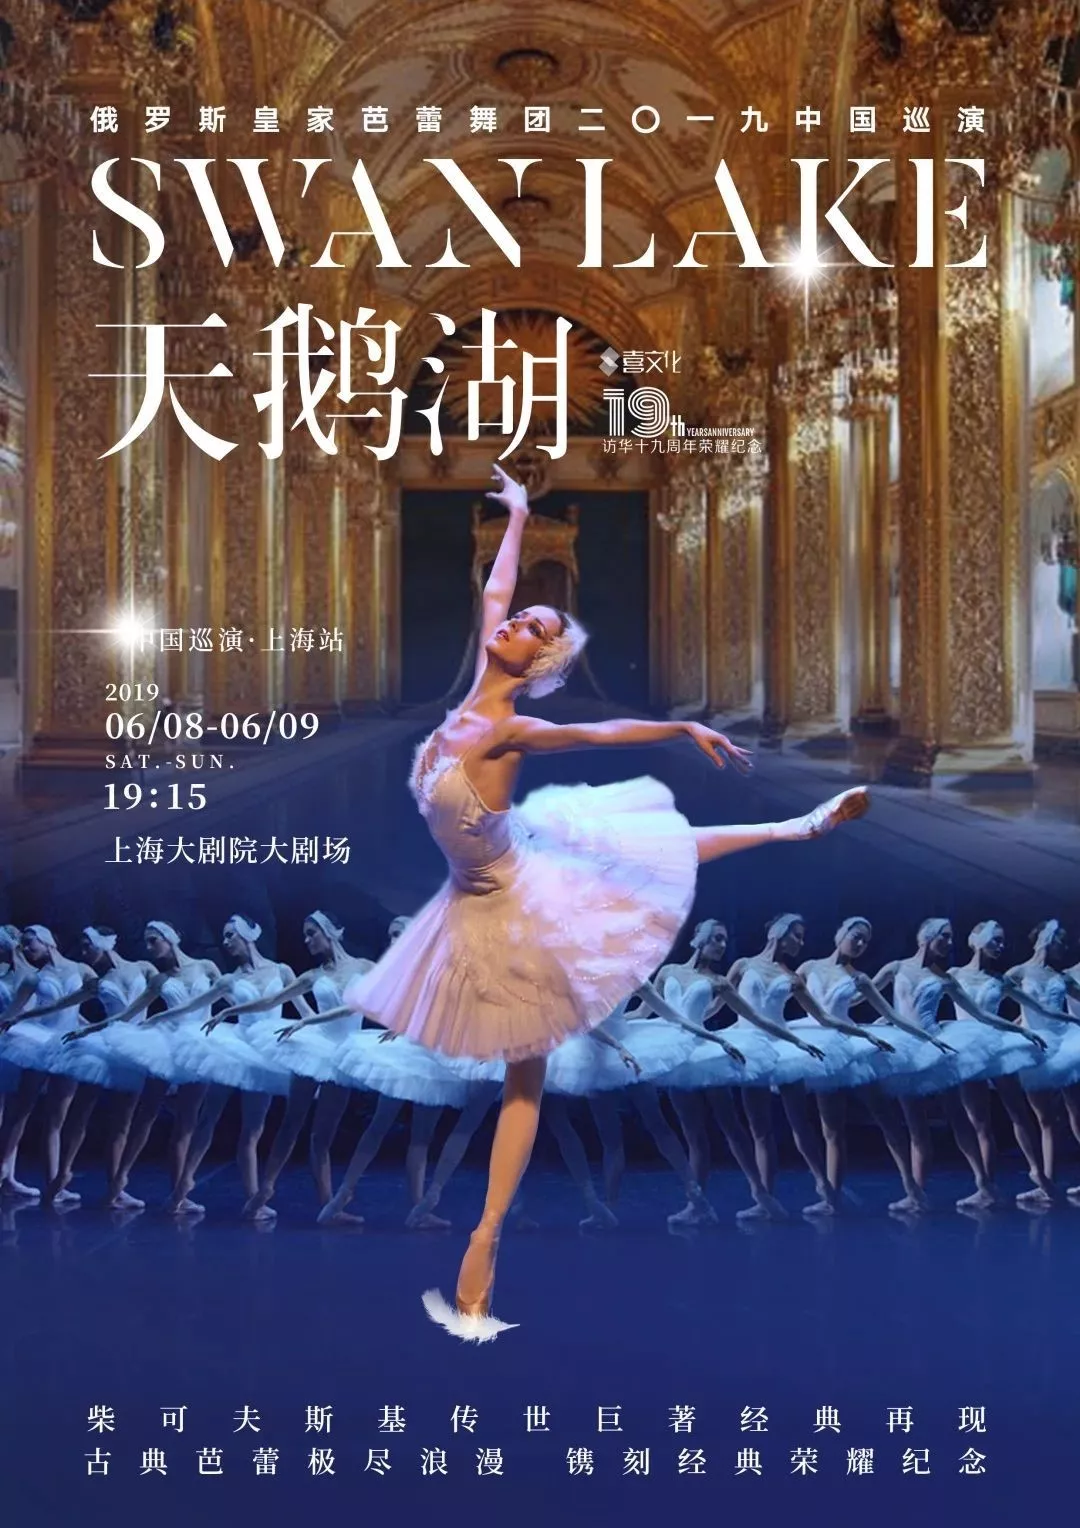 俄罗斯皇家芭蕾舞团《天鹅湖》 2019中国巡演上海站时间门票